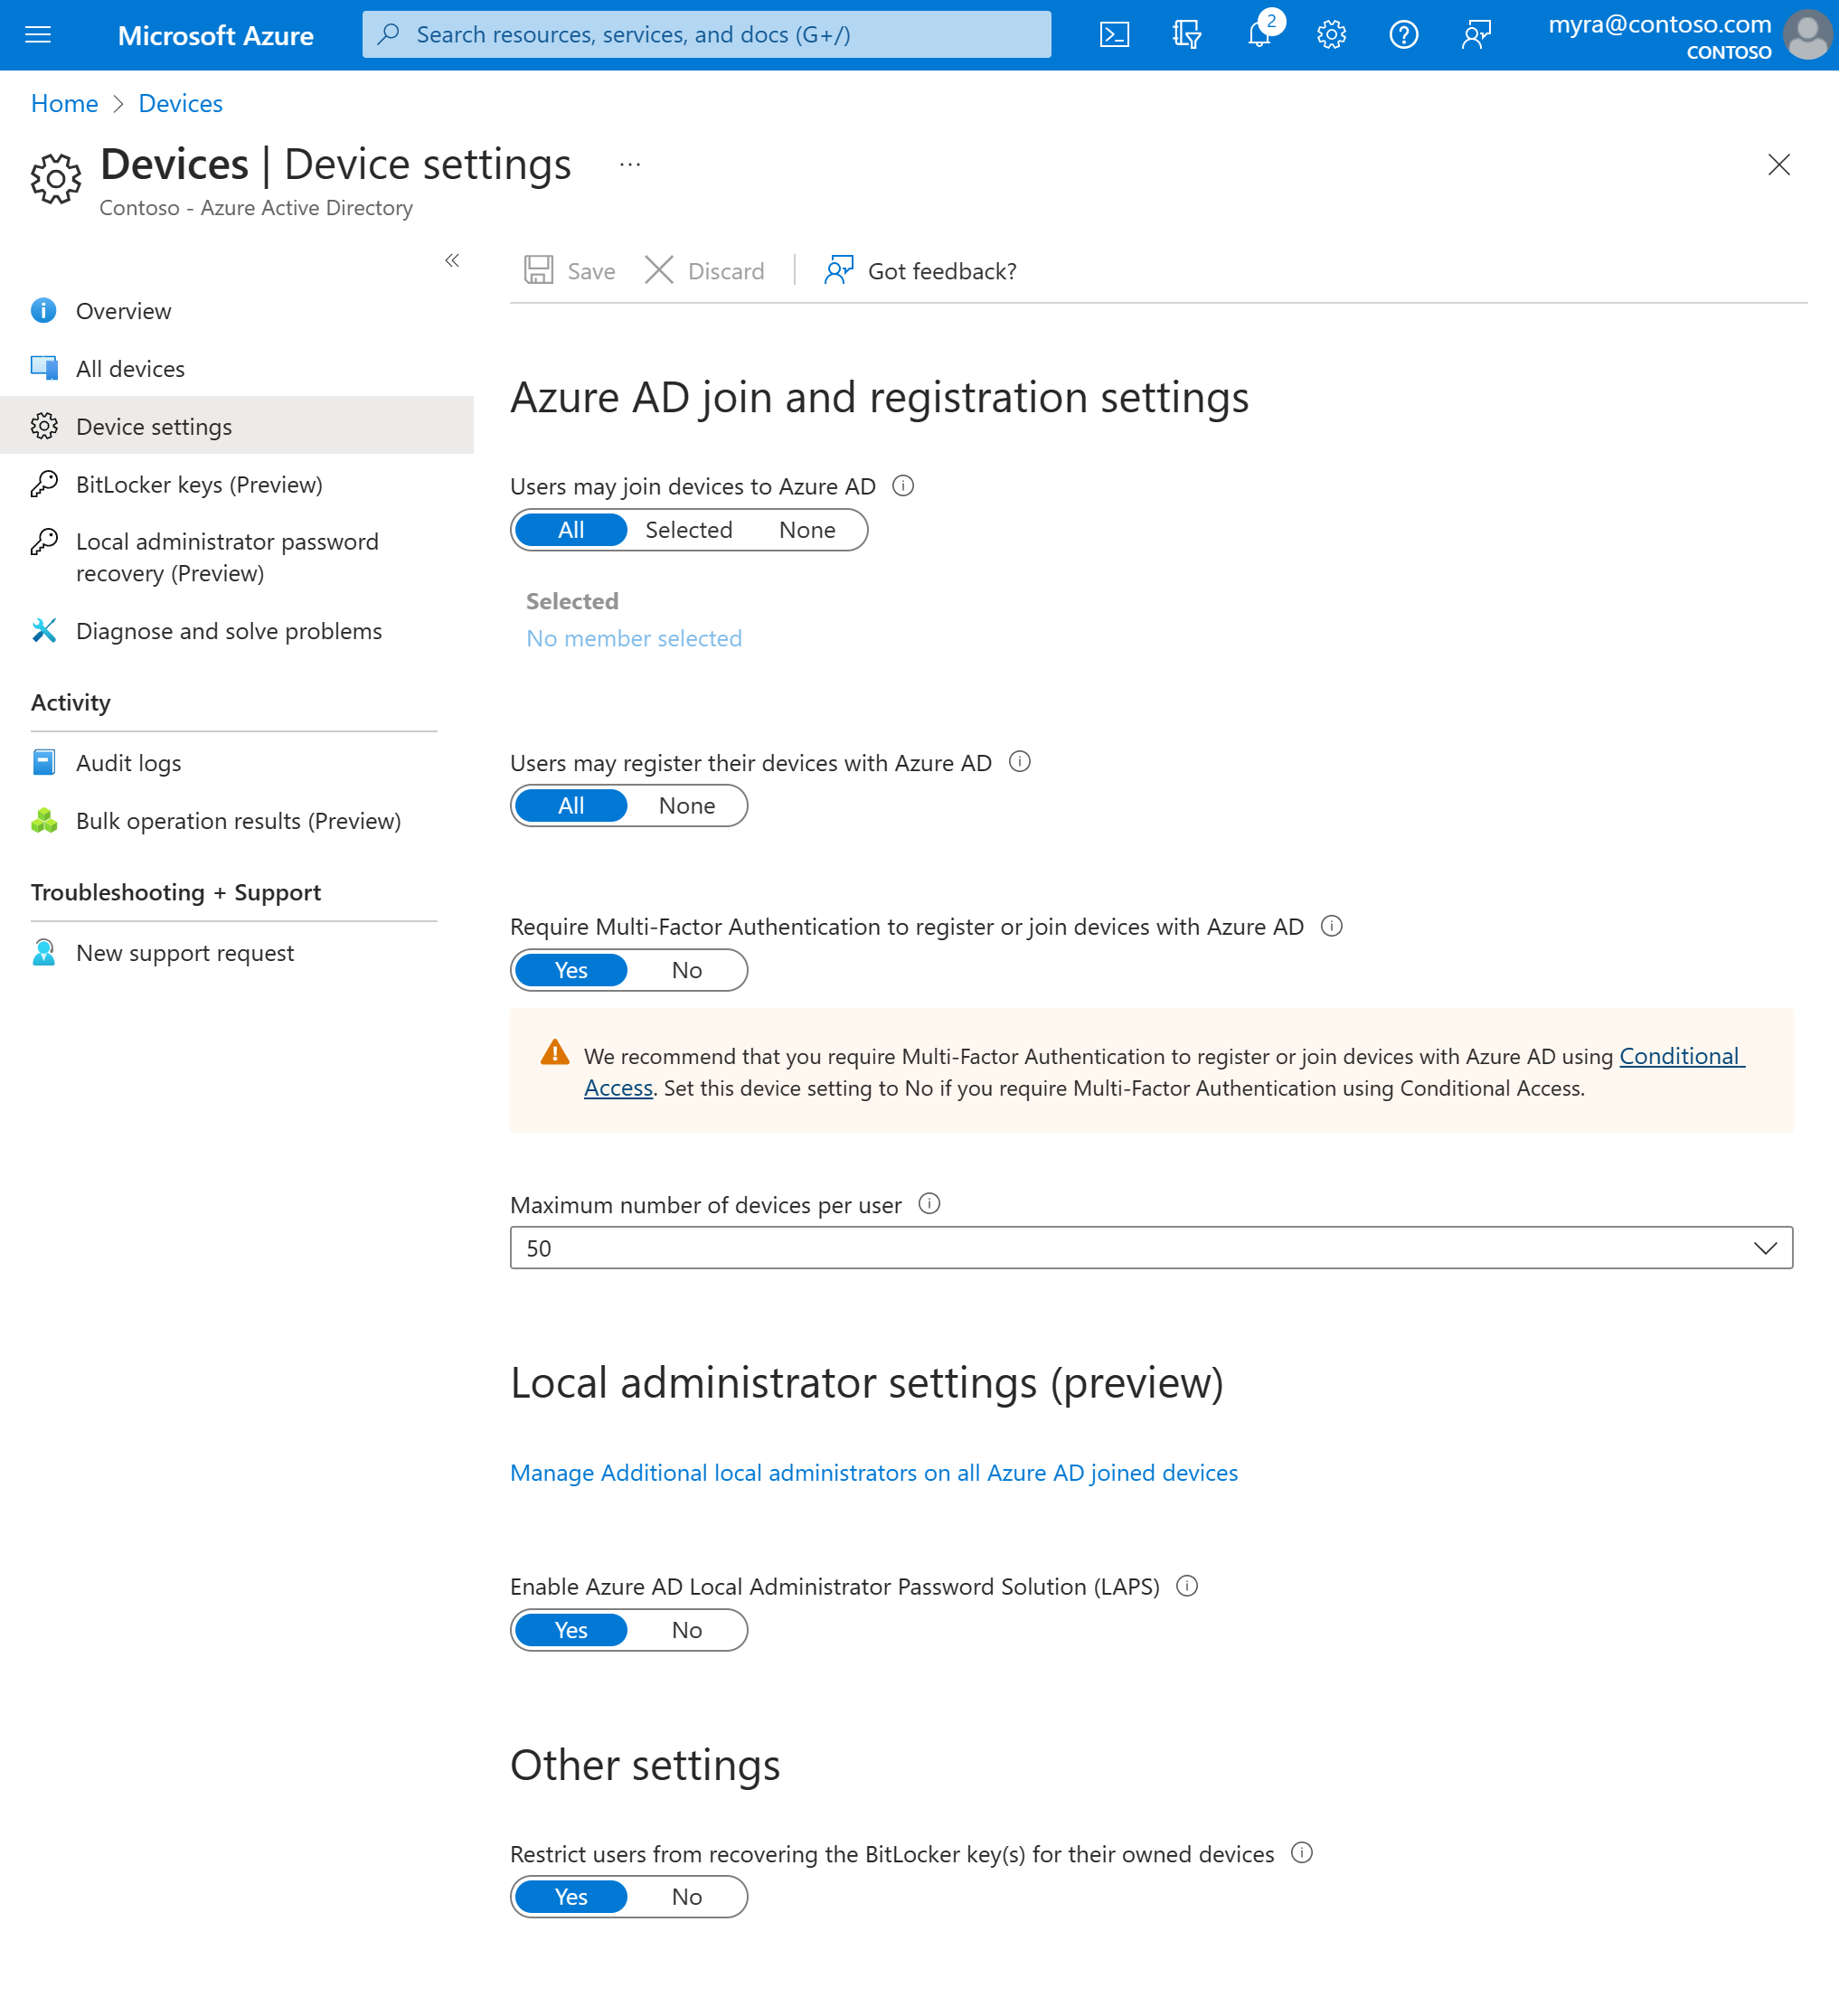 Captura de pantalla que muestra la configuración de dispositivos en relación con Microsoft Entra ID.